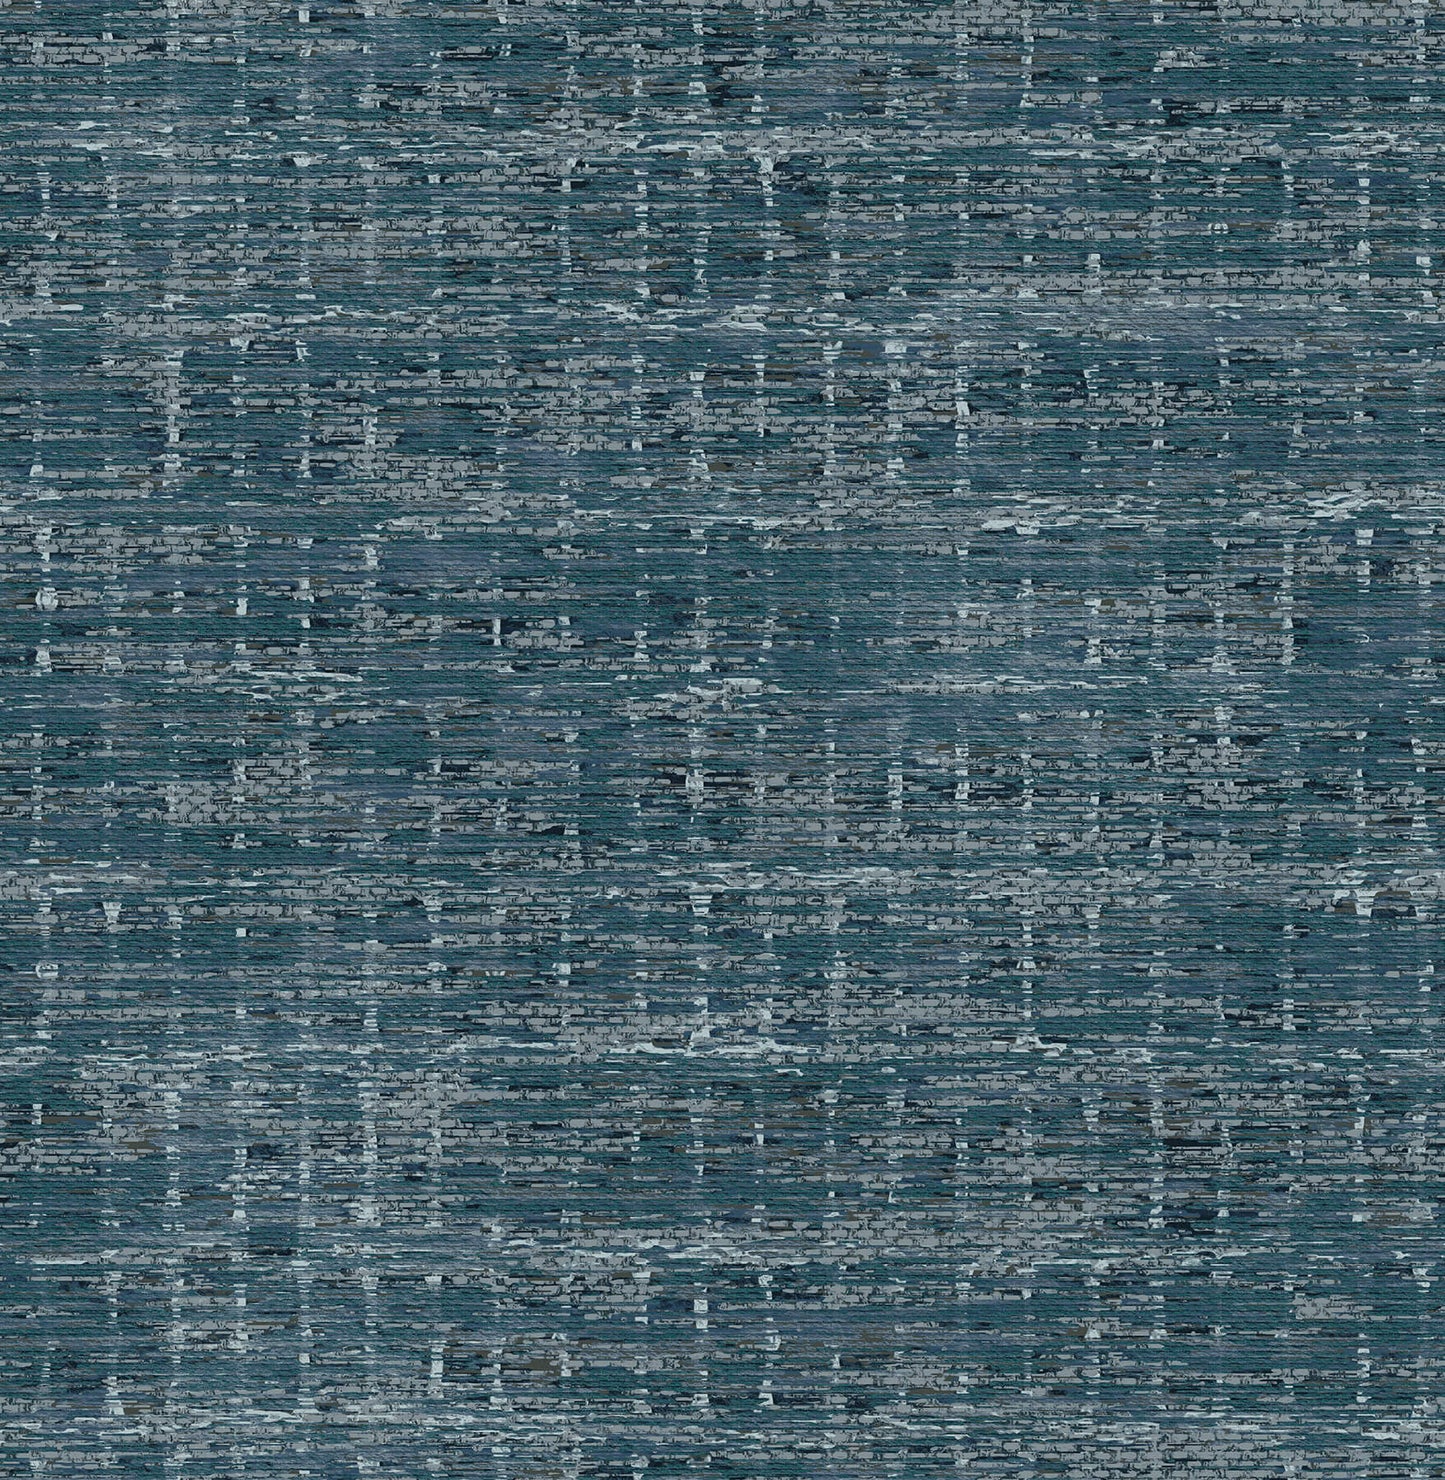 Scott Living II Samos Texture Wallpaper - Blue